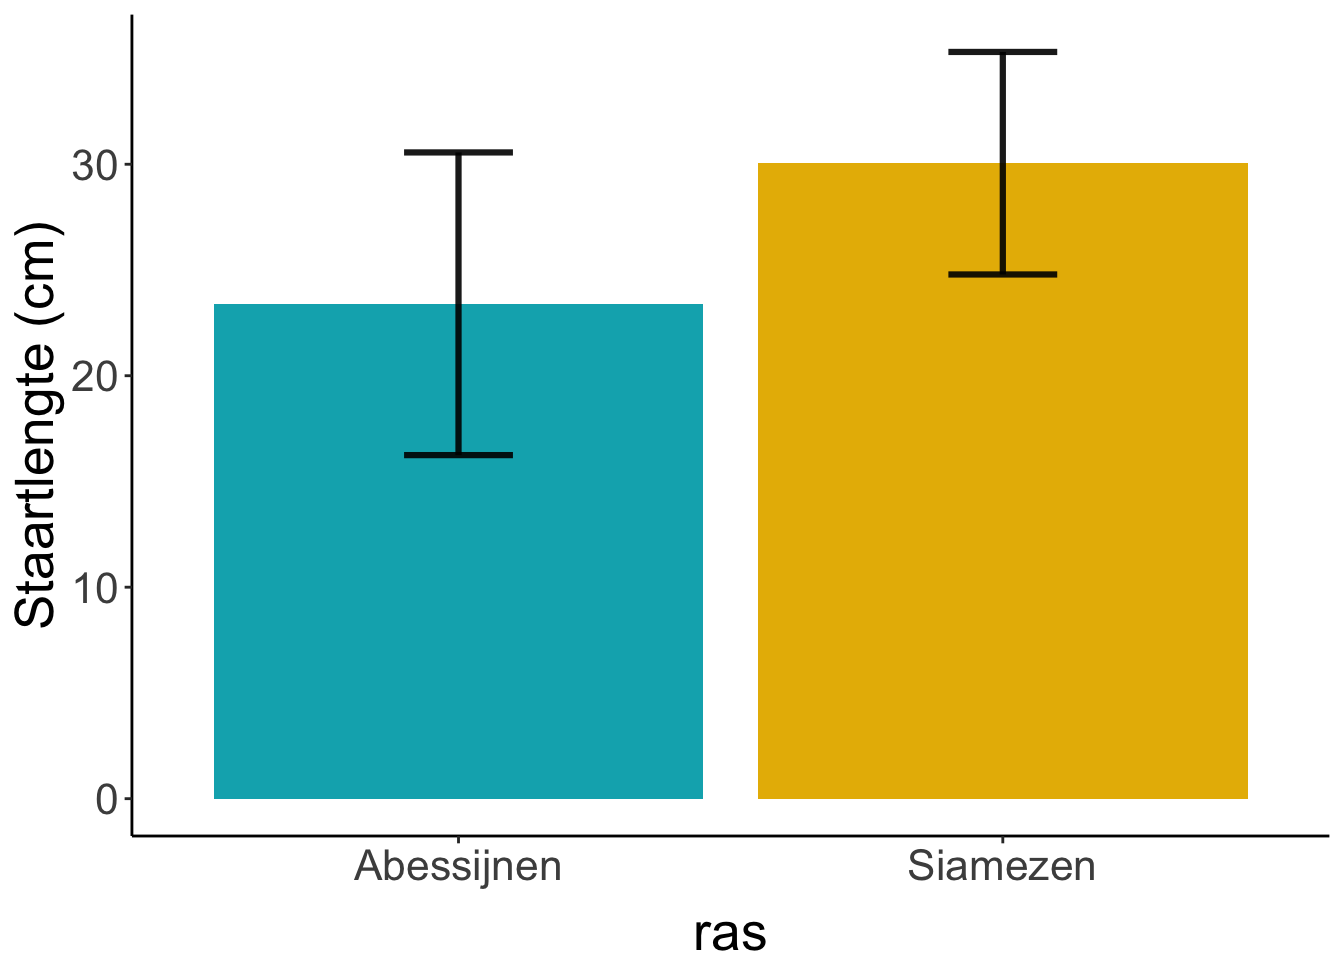 Gemiddelde staartlengte van Abesijnen en Siamezen. In de foutenbalken staat de standaarddeviatie (komt terug in een latere les)